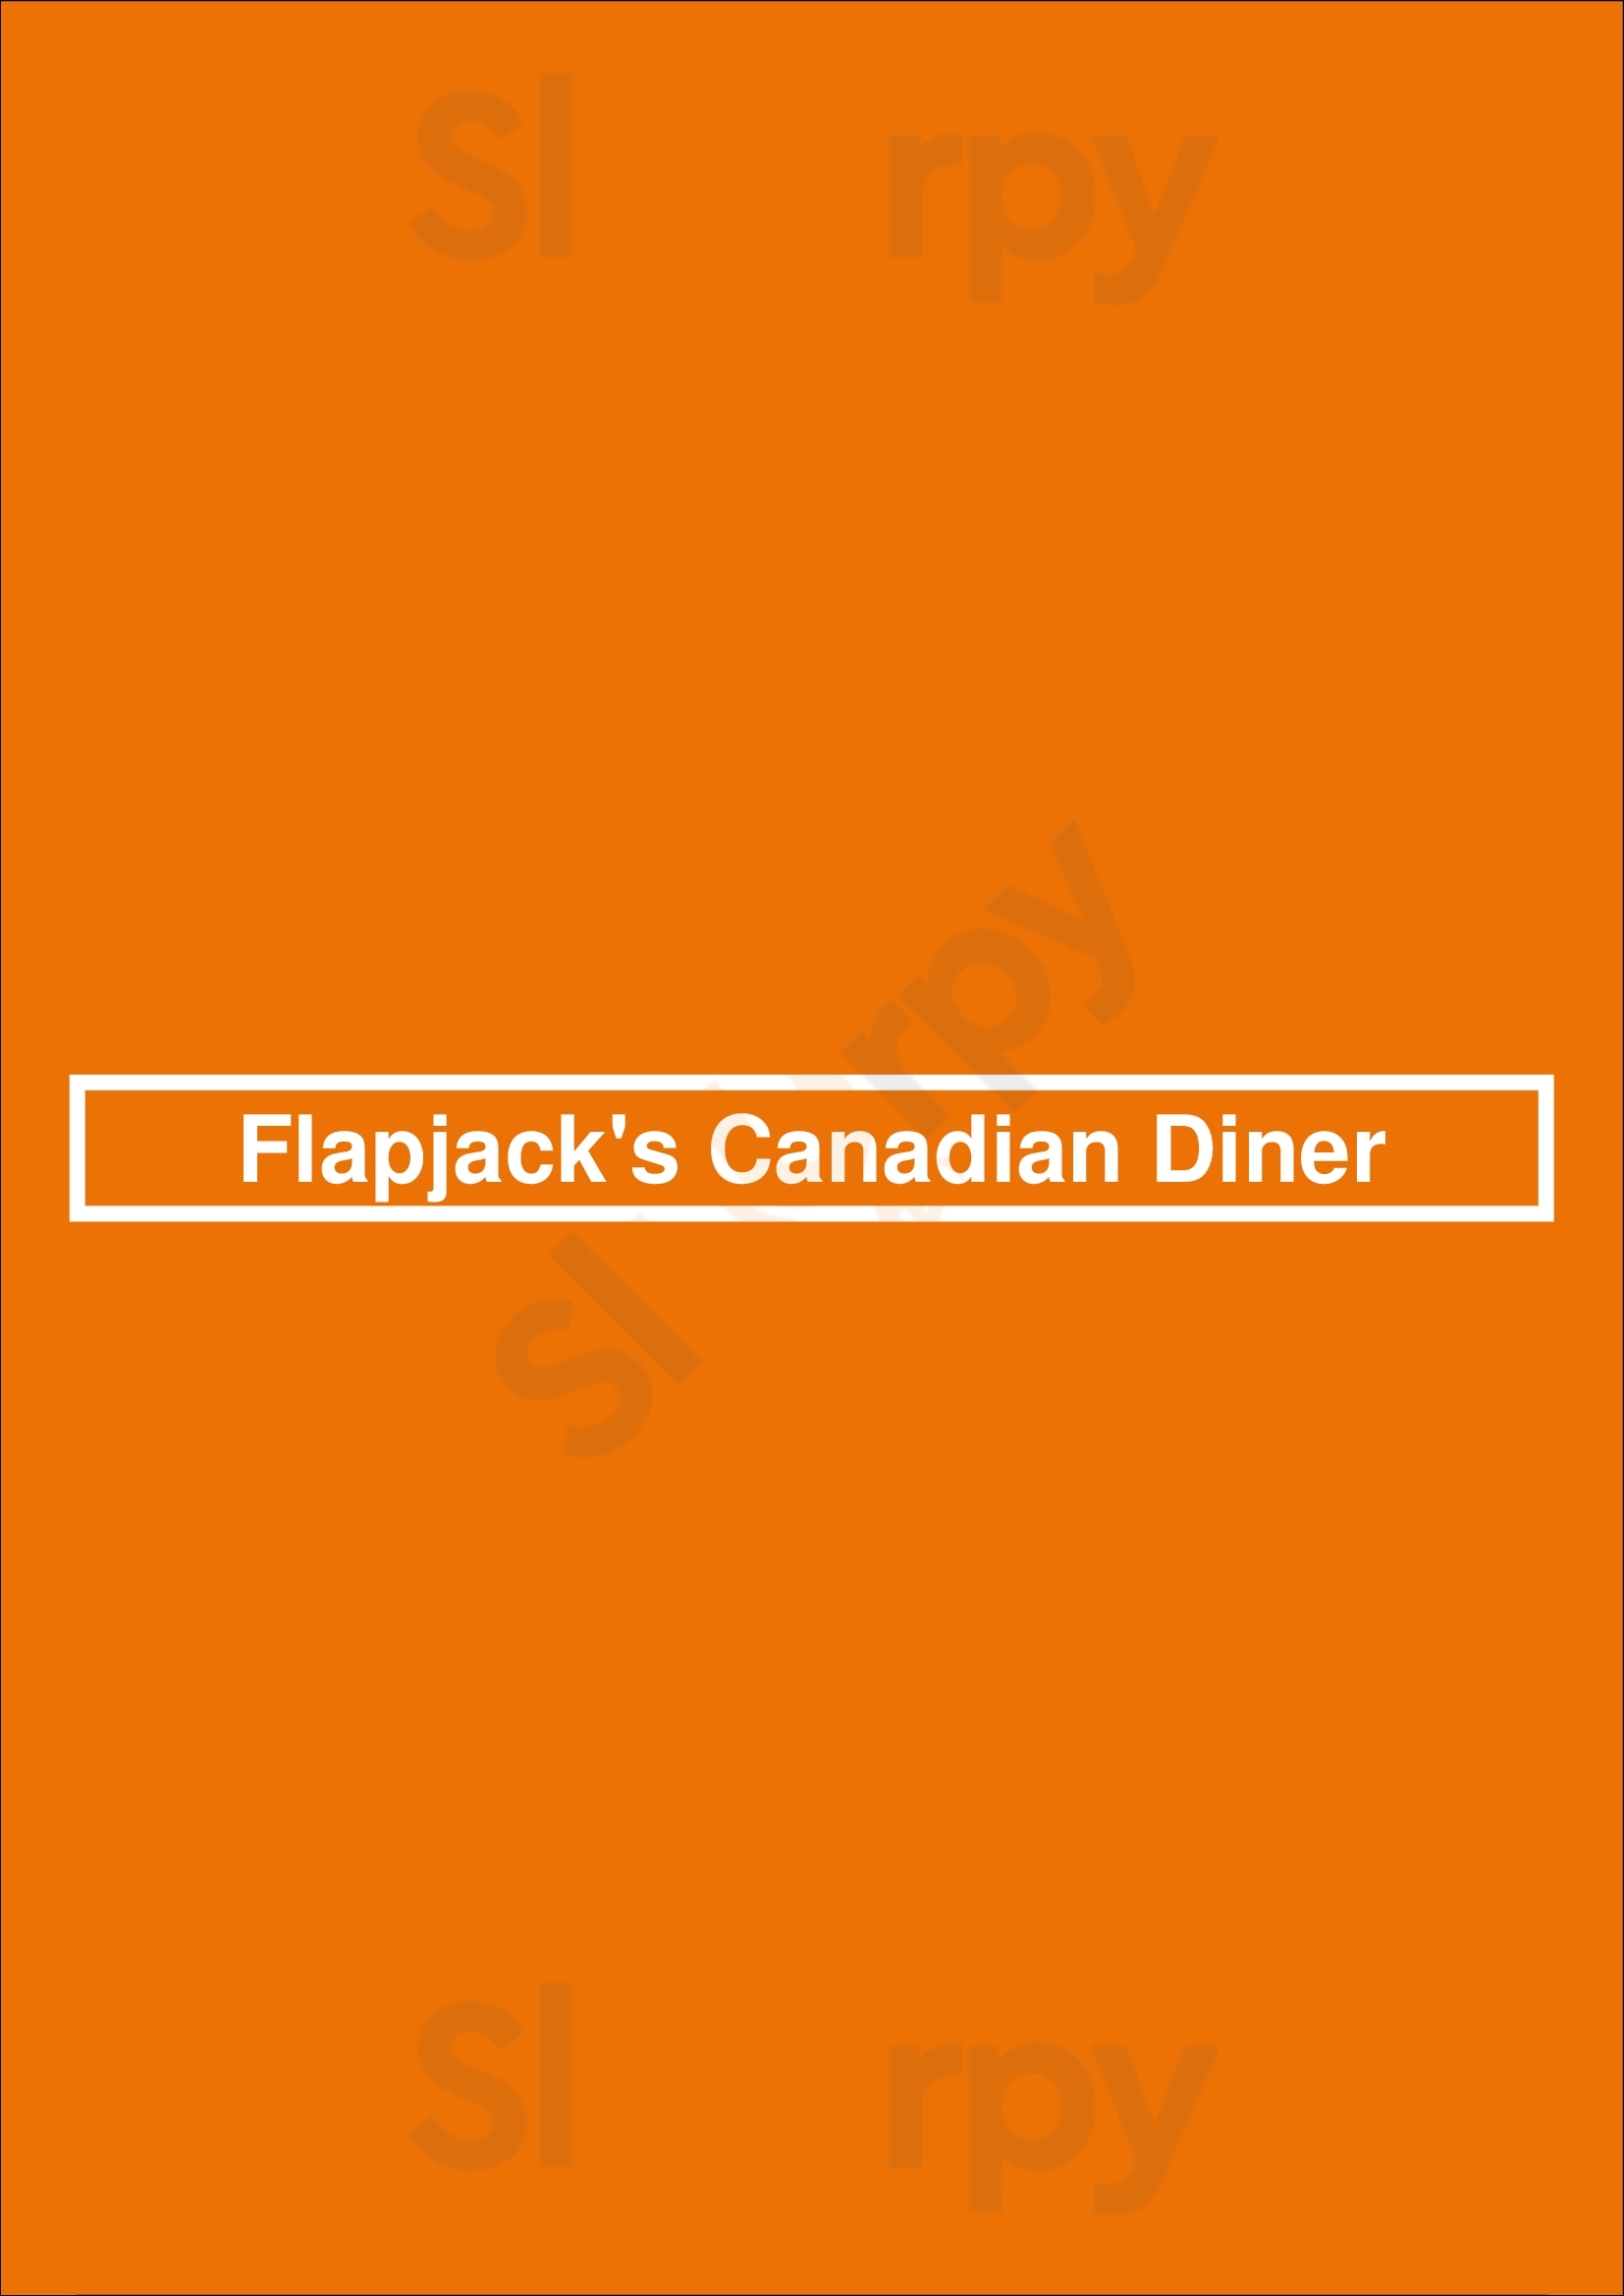 Flapjack's Canadian Diner Ottawa Menu - 1